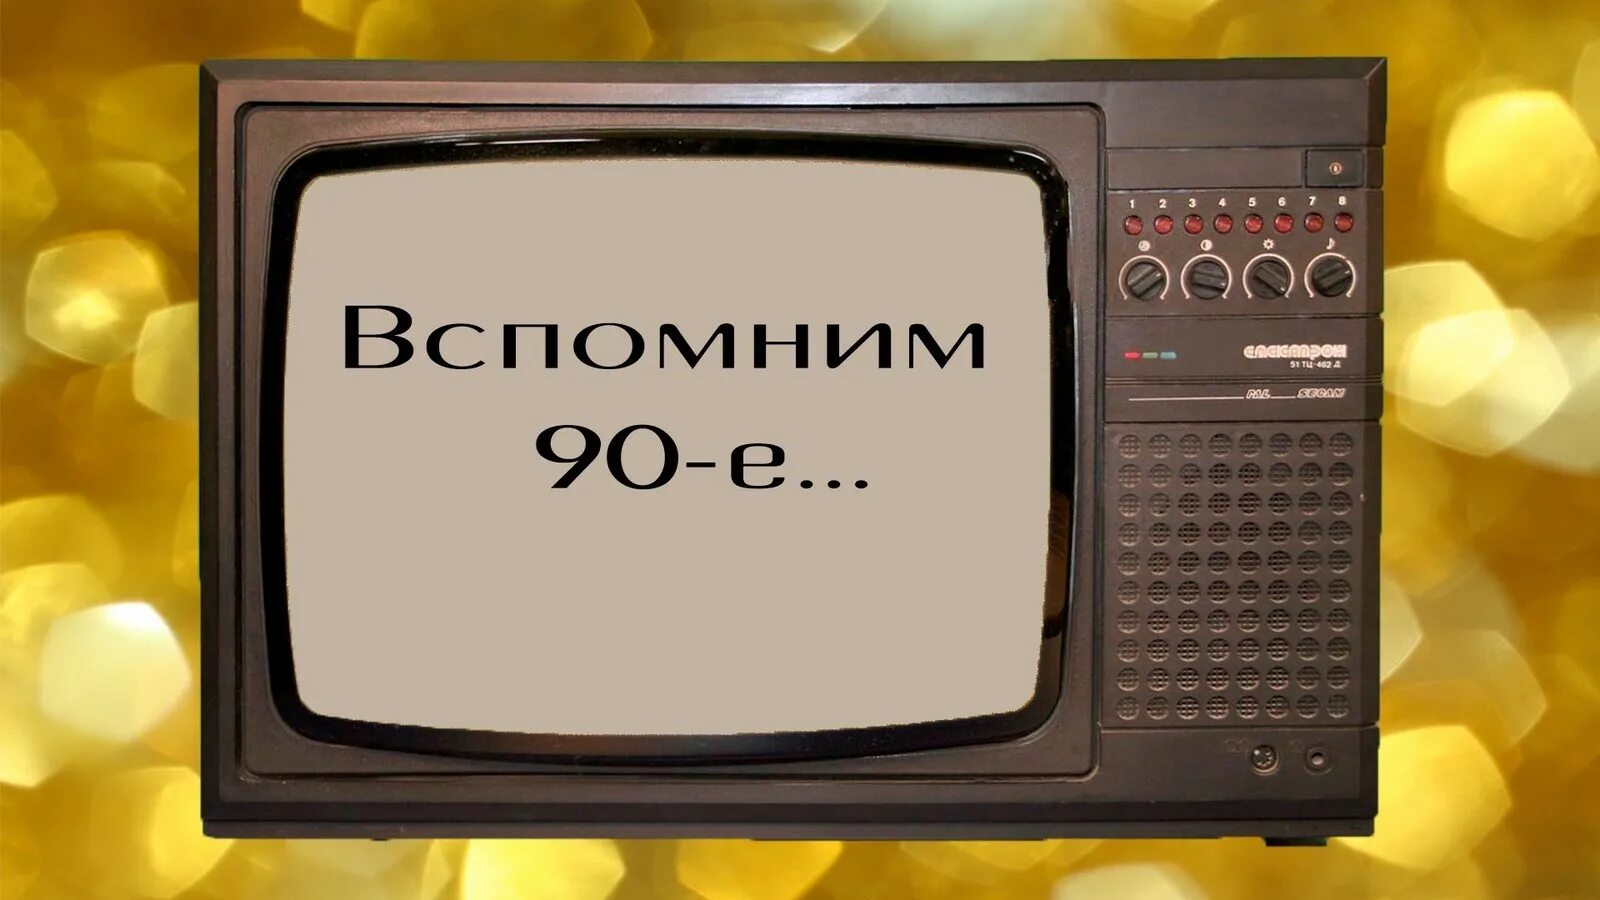 Показать видео 90. Старый телевизор. 90-Е Телевидение. Символы 90-х. 90 Е ностальгия.